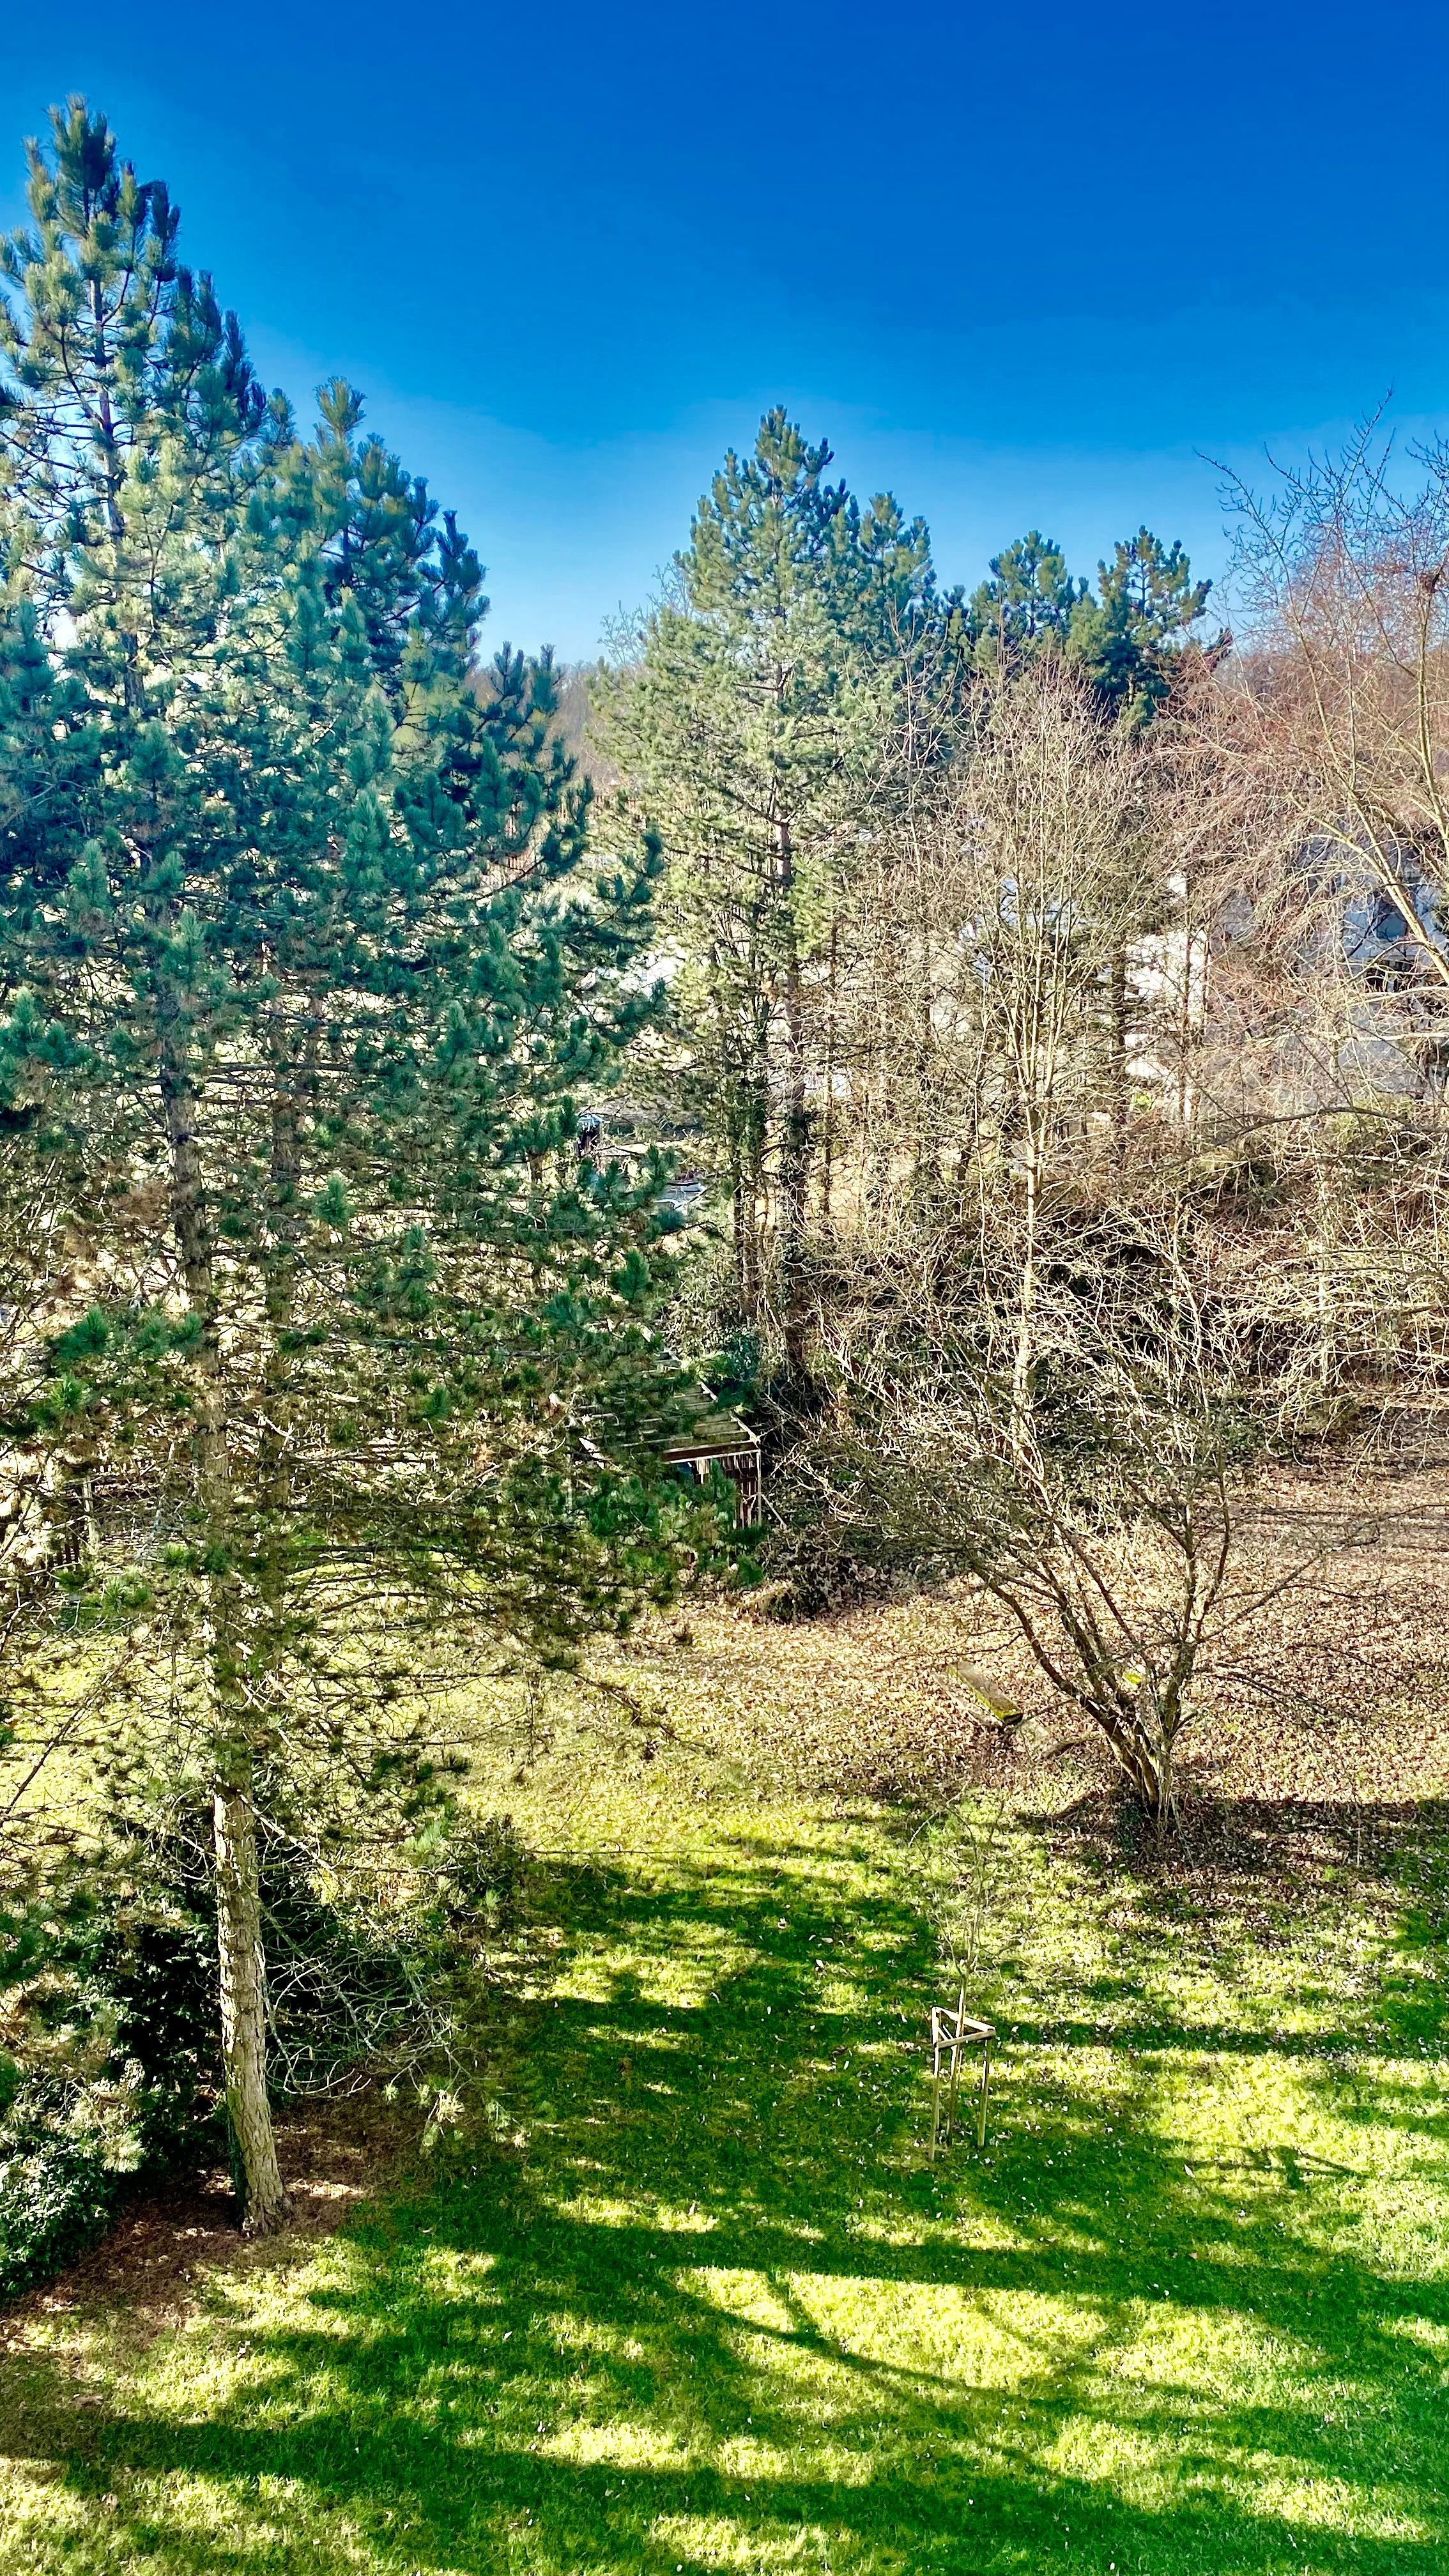 Heute morgen,  der Blick vom Balkon sagte mir: Der Frühling naht  🌳🌿 #natur #frühling #sonne #balkon